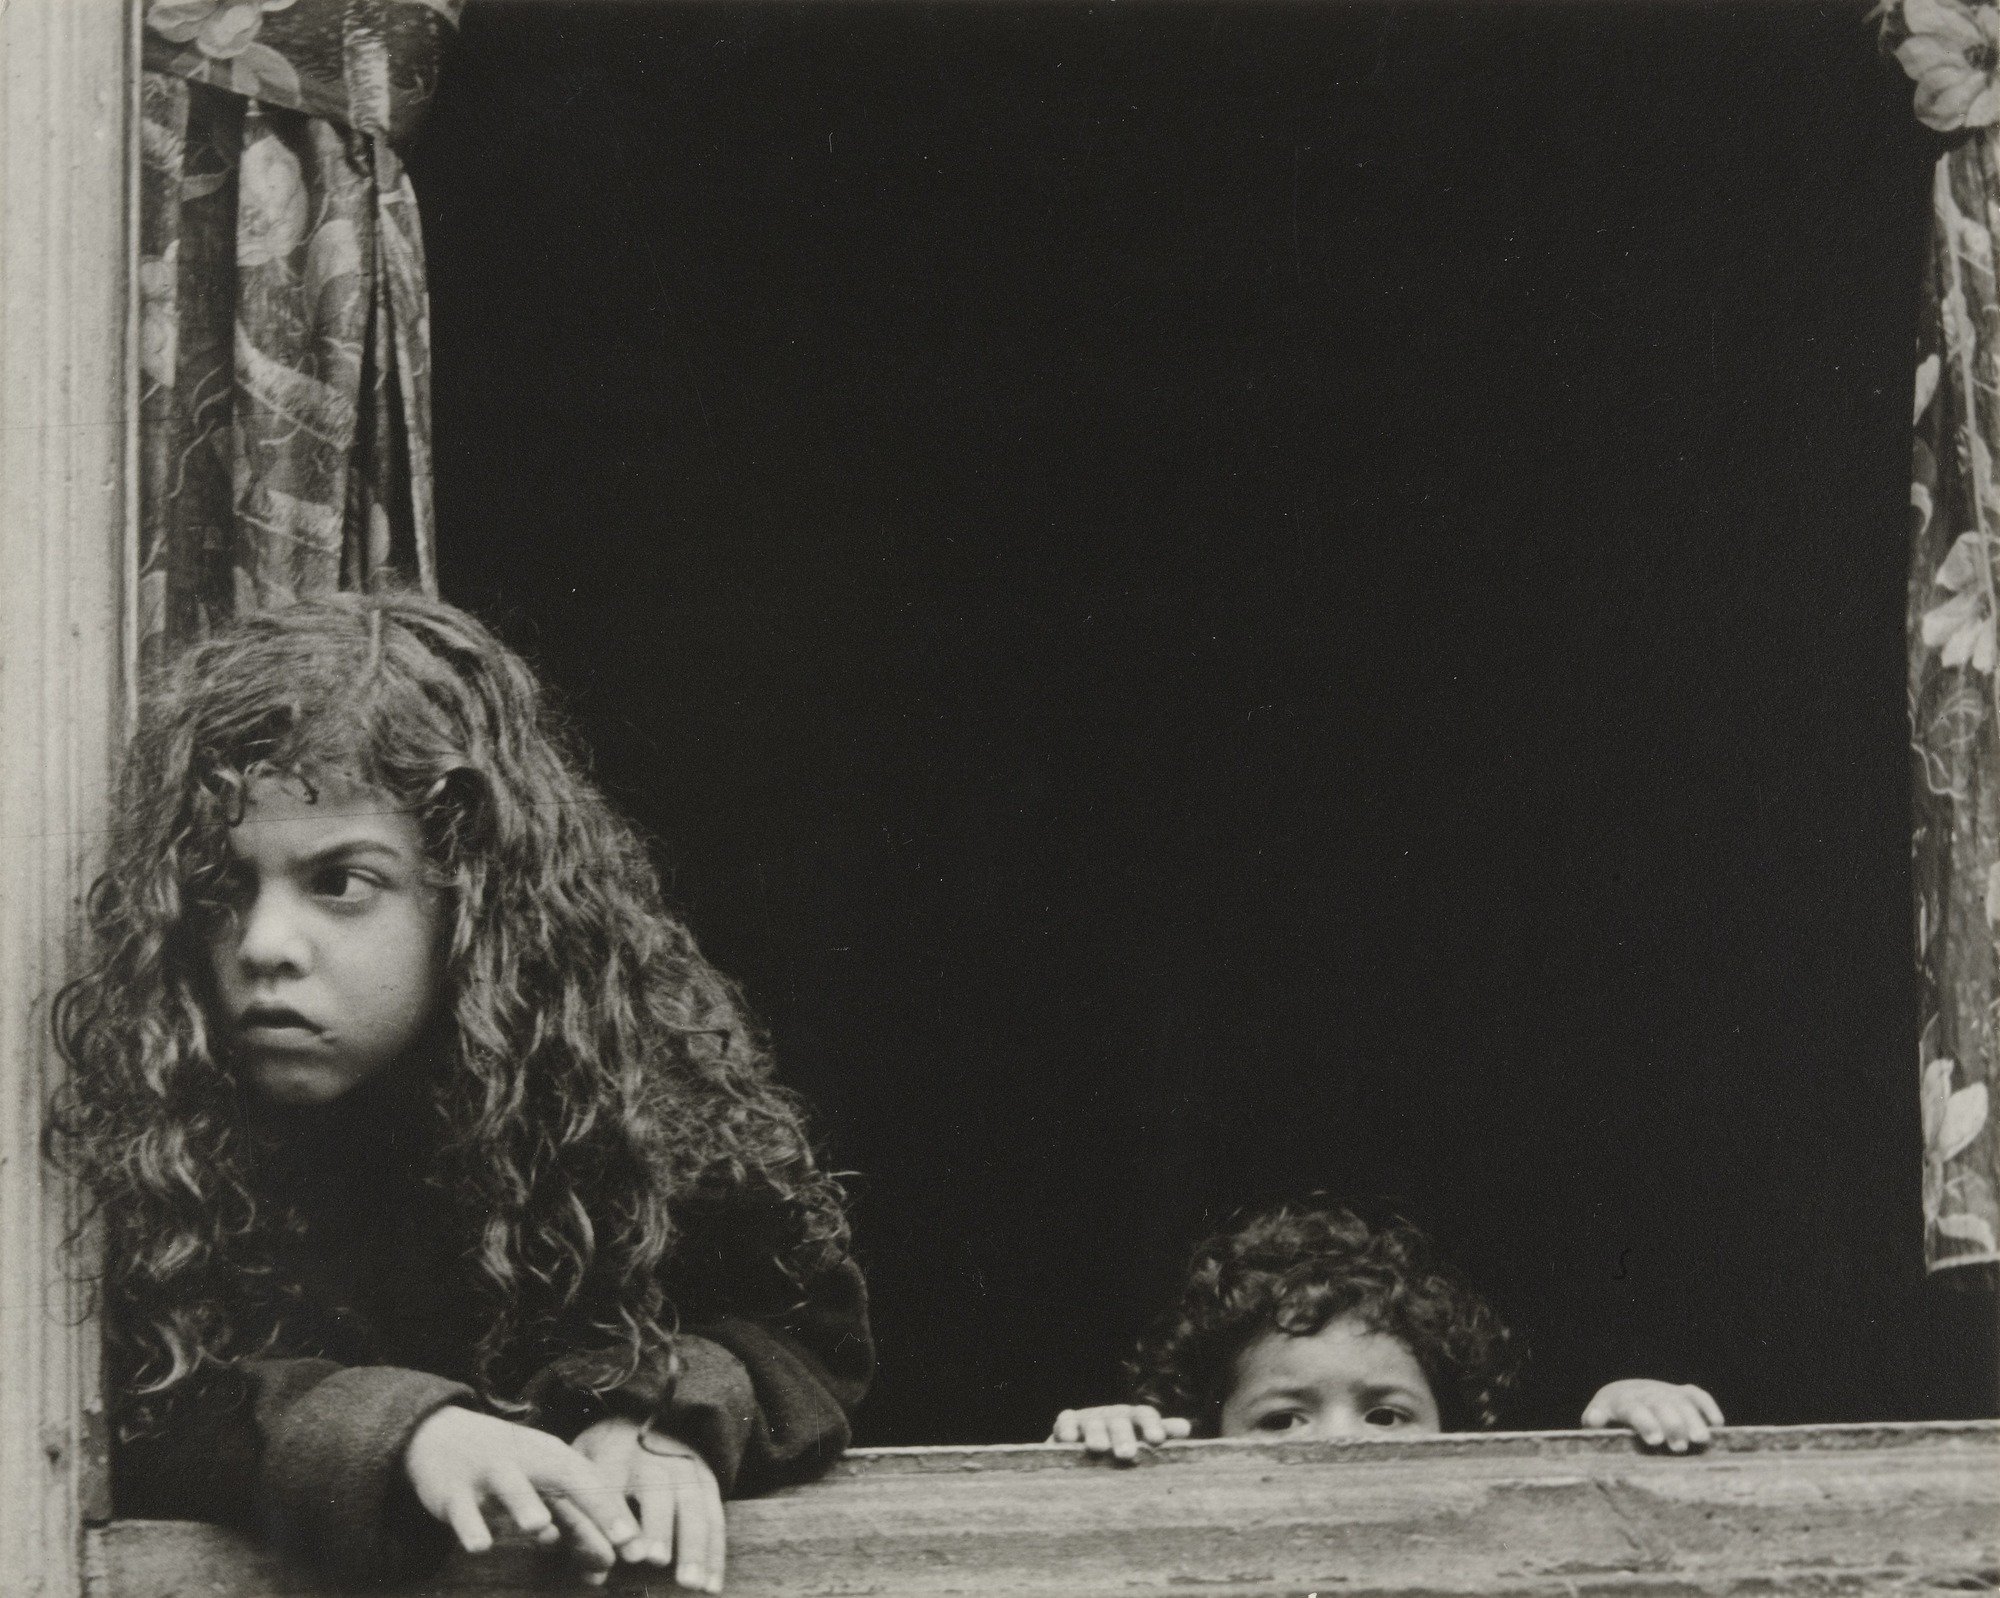 Helen Levitt - Kinder am fenster, New York 1942